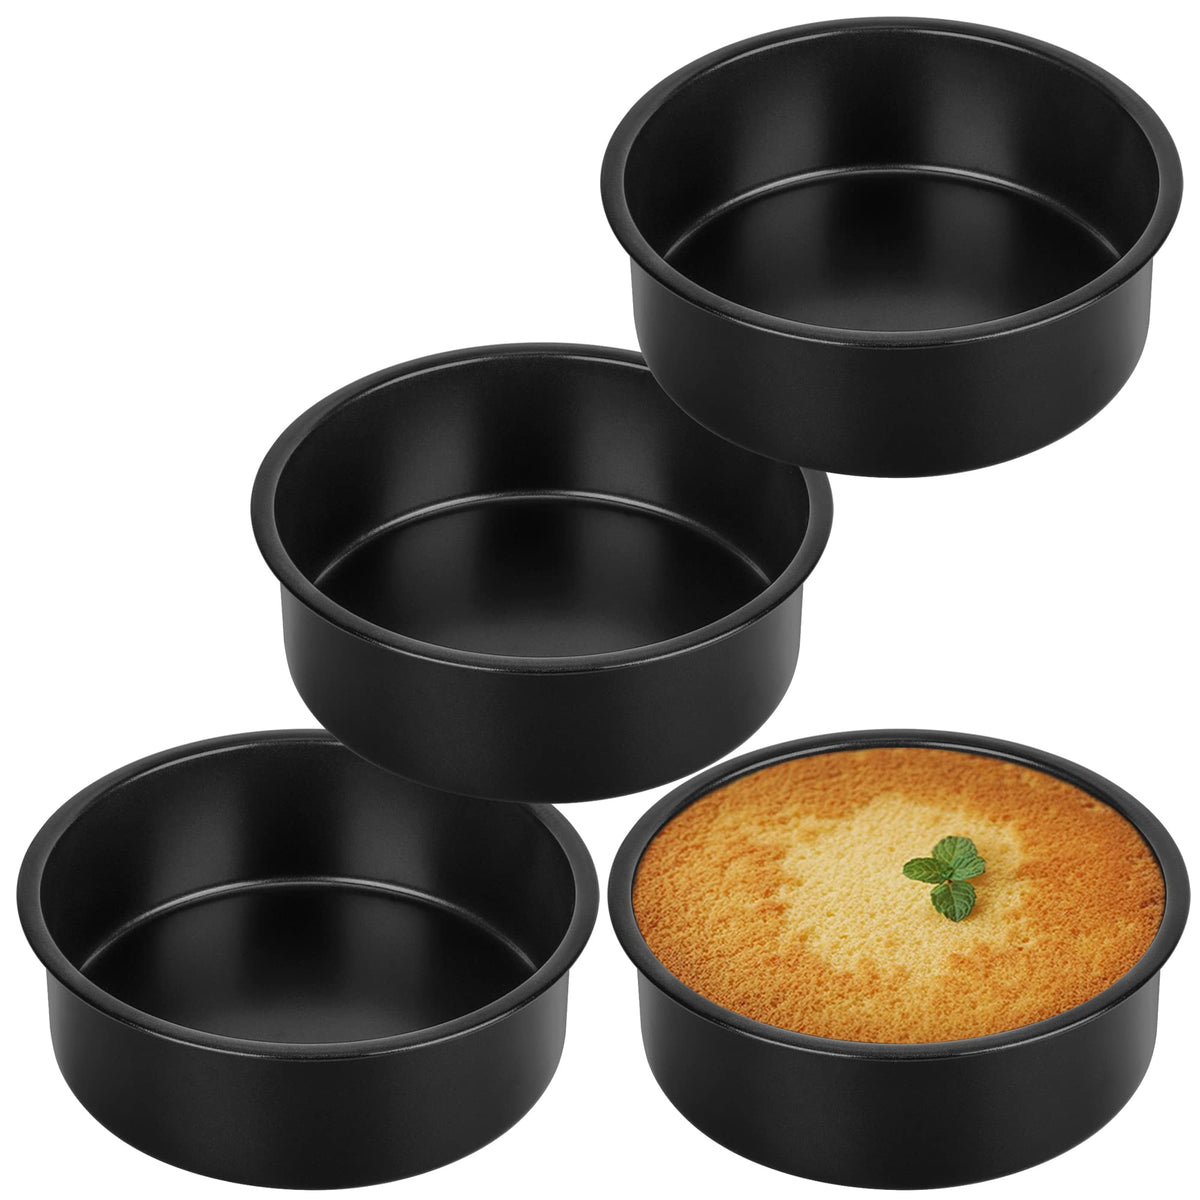 Homikit 8 Inch Cake Pan Set of 2, Stainless Steel Nonstick Round Cake —  CHIMIYA